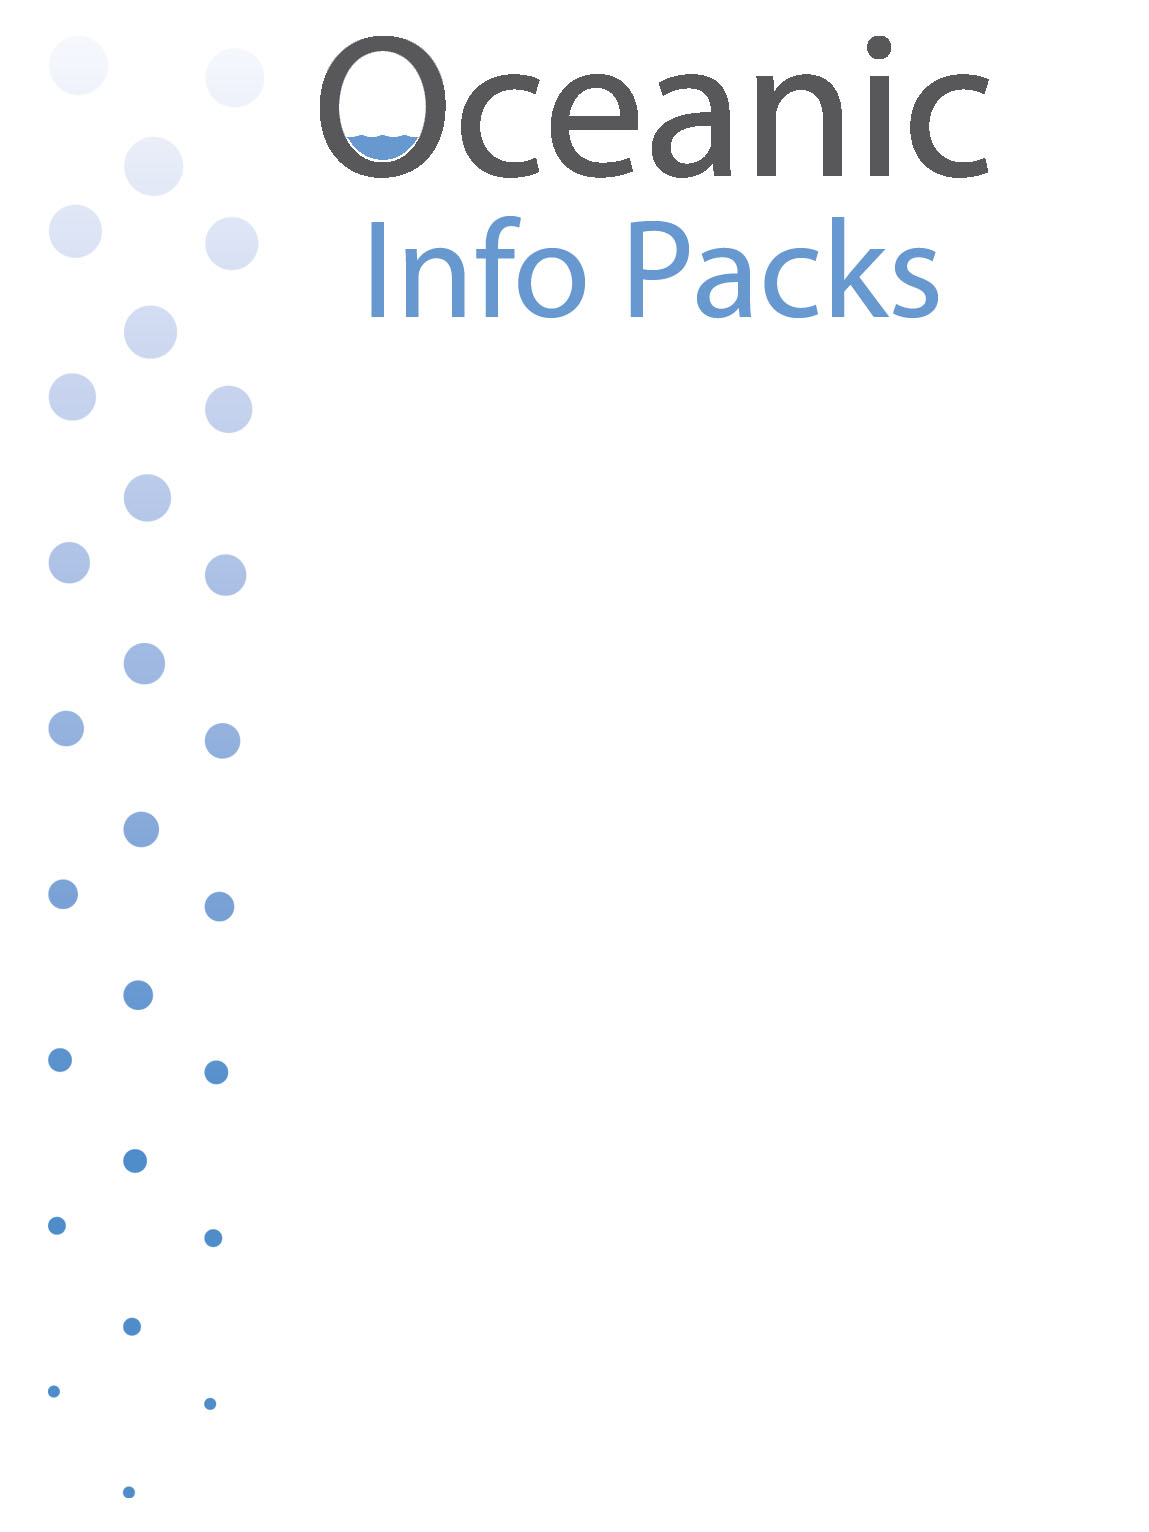 Info Packs